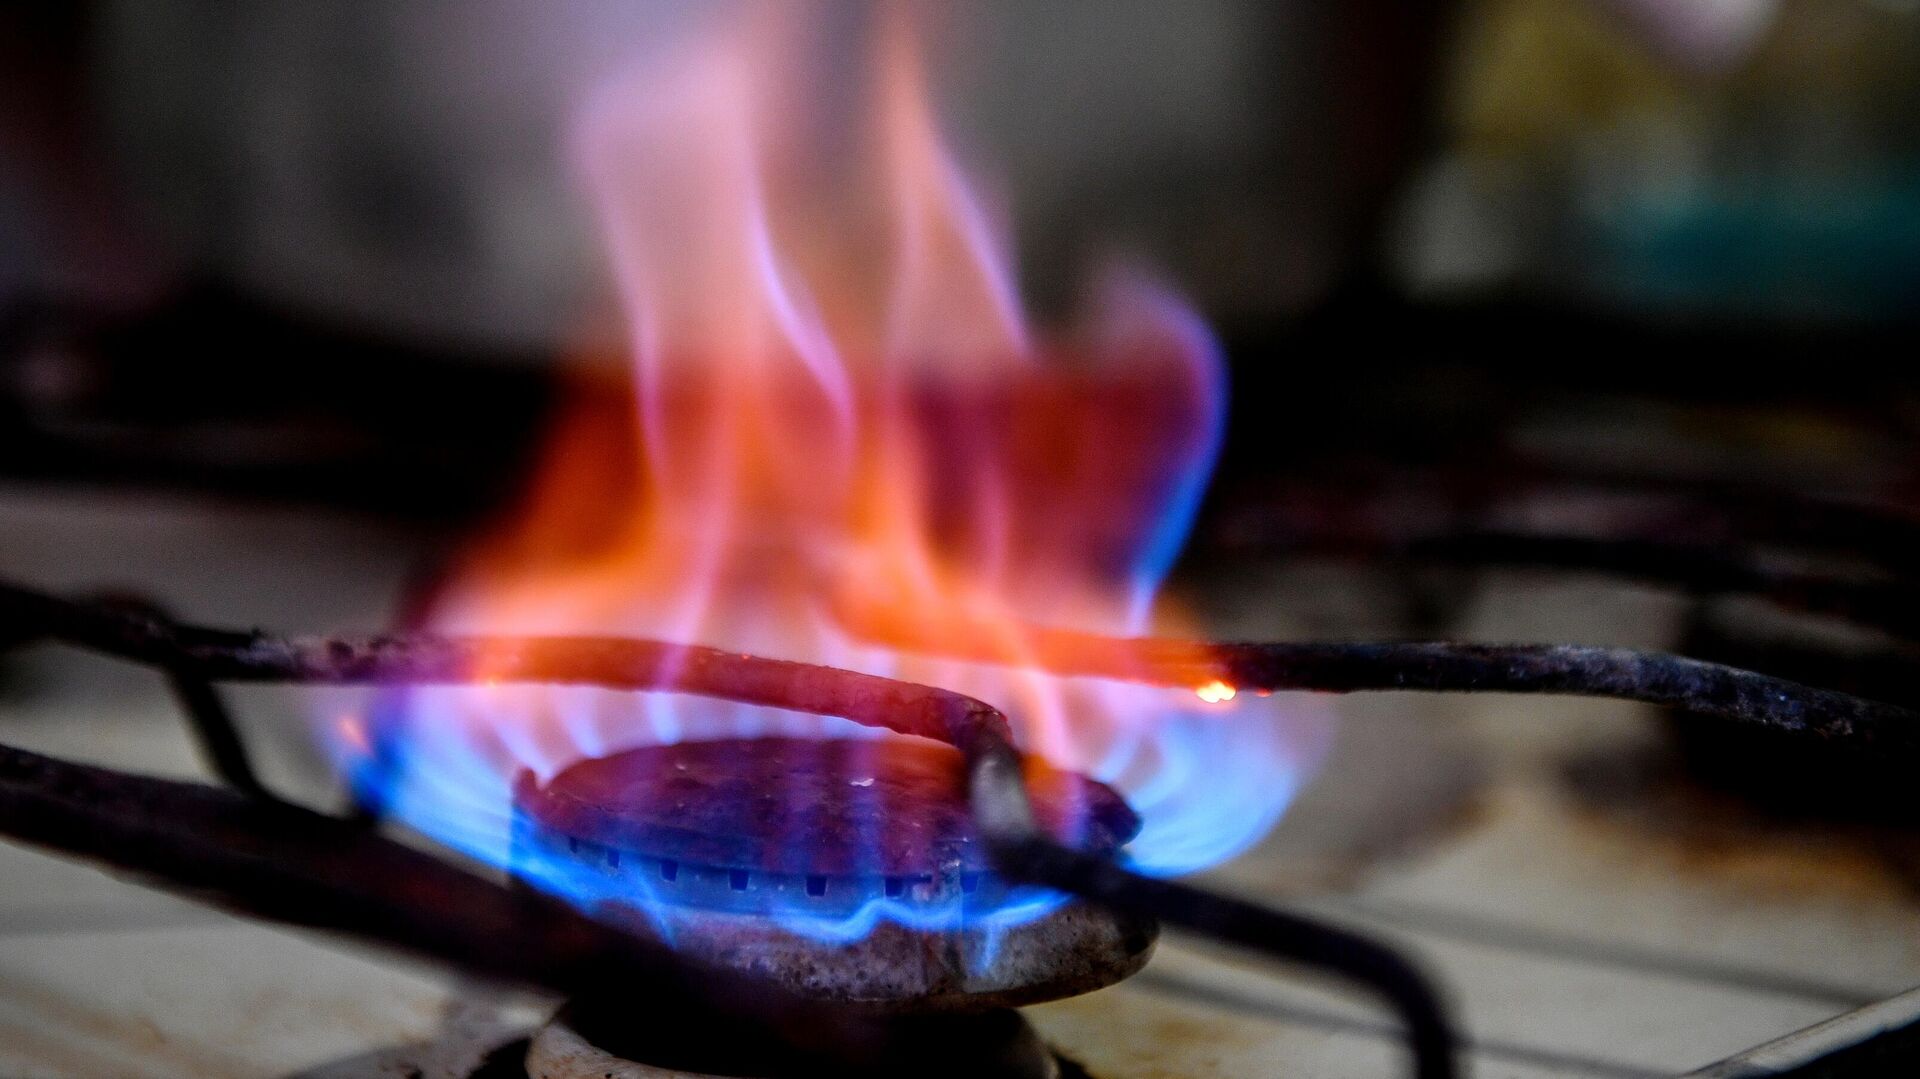 В "Газпроме" пообещали бесплатно провести газ в небольшие частные дома